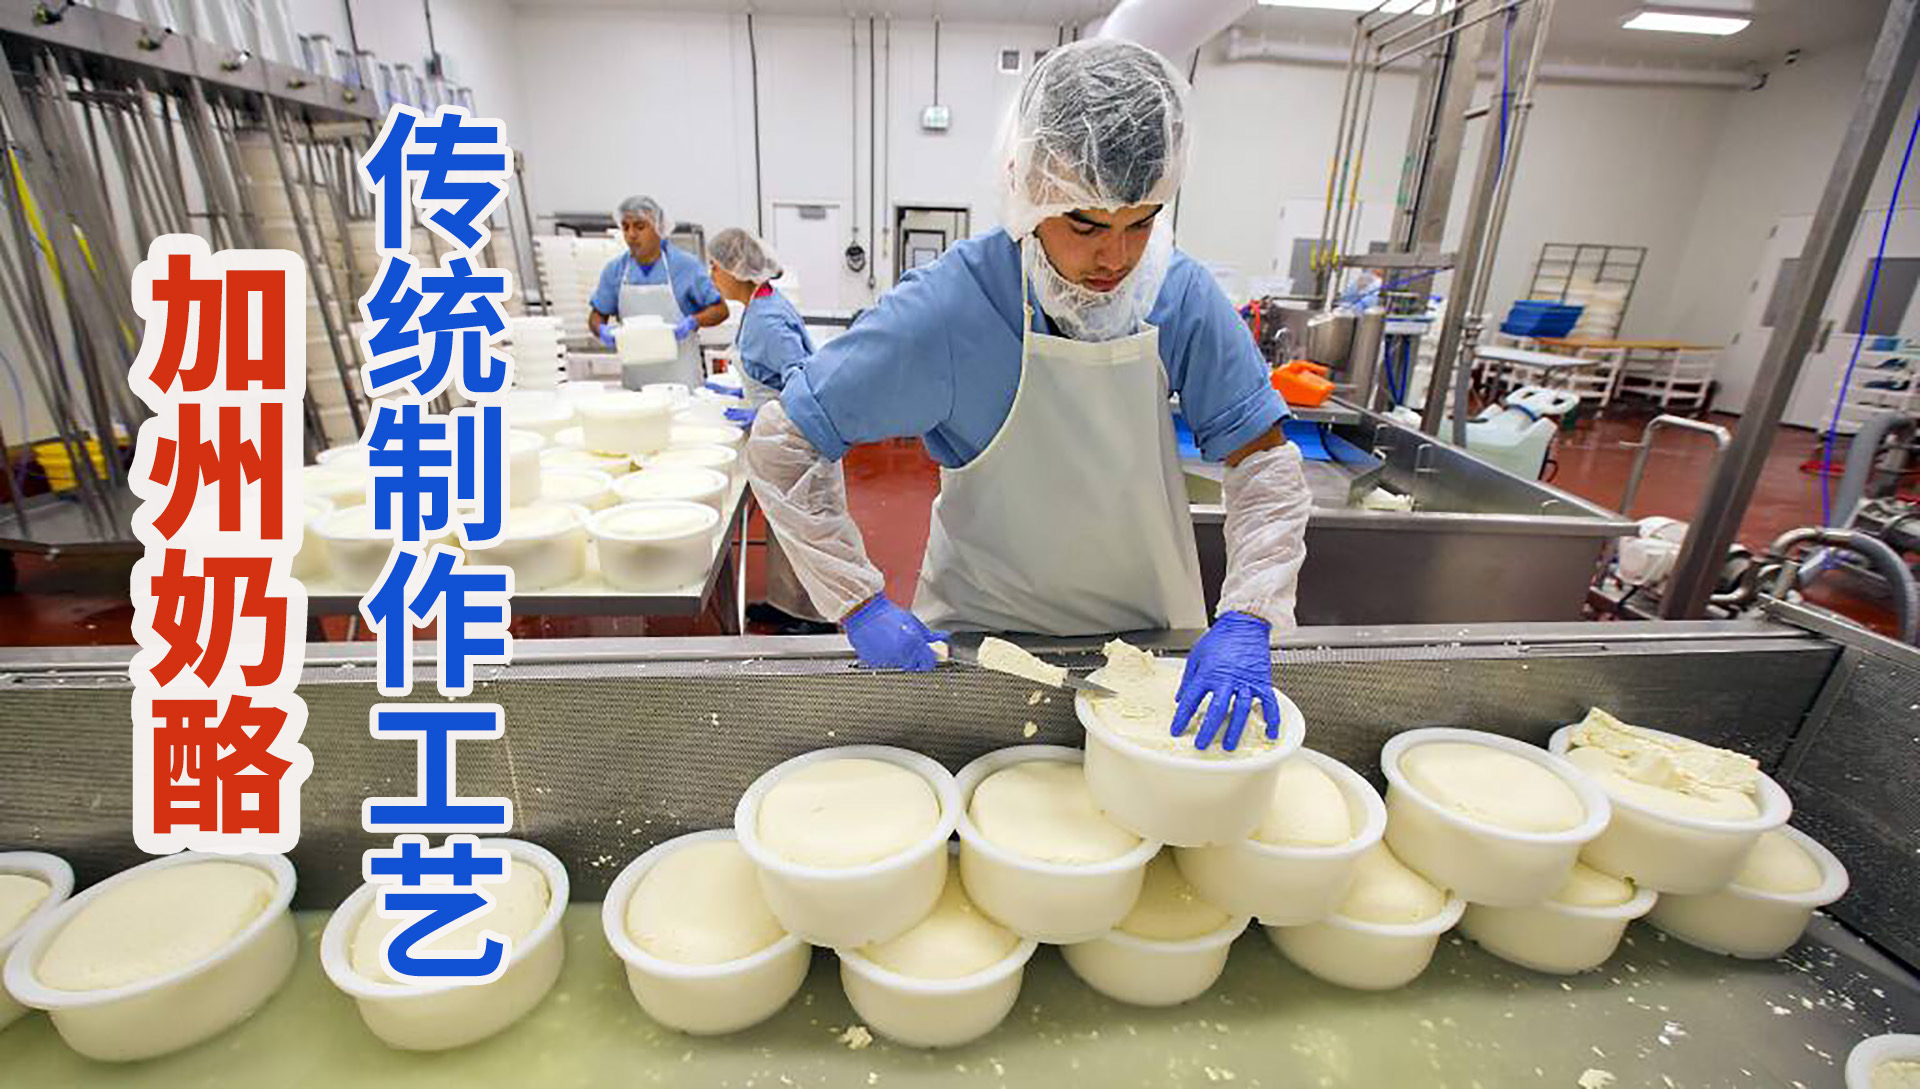 奶酪是如何制作的丨带你走进国外的奶酪工厂 中英字幕_哔哩哔哩_bilibili